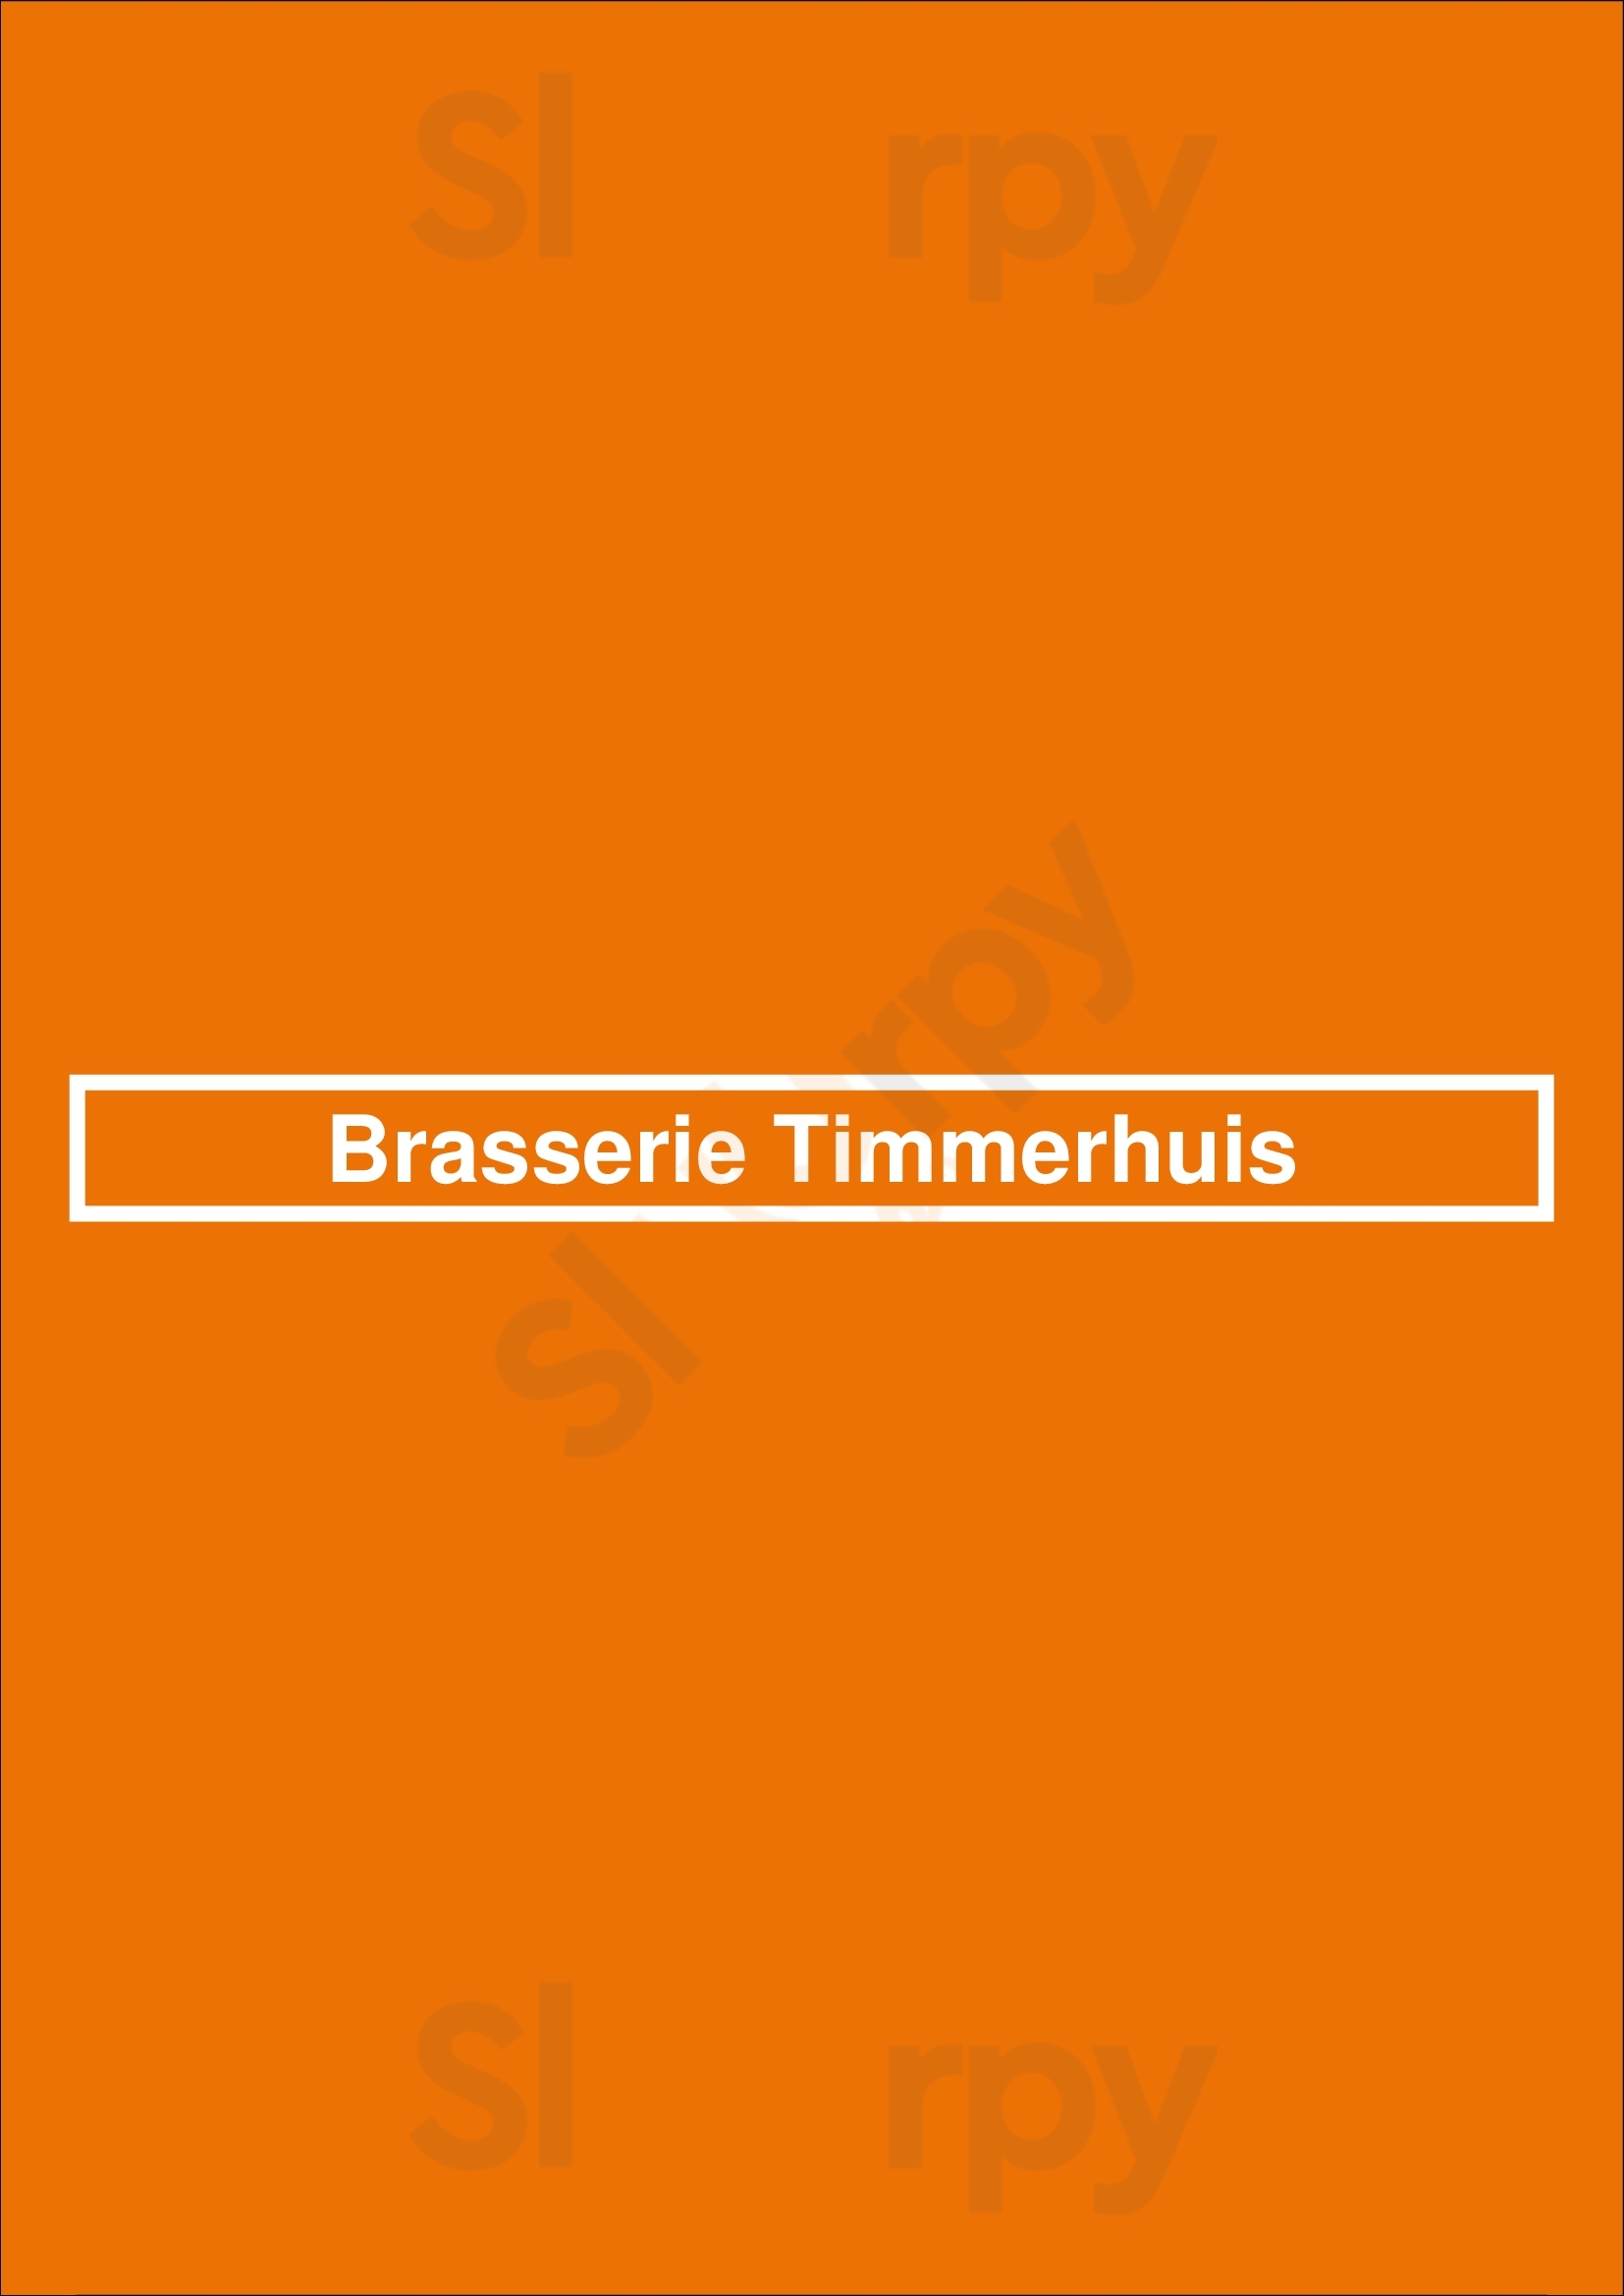 Brasserie Timmerhuis Rotterdam Menu - 1